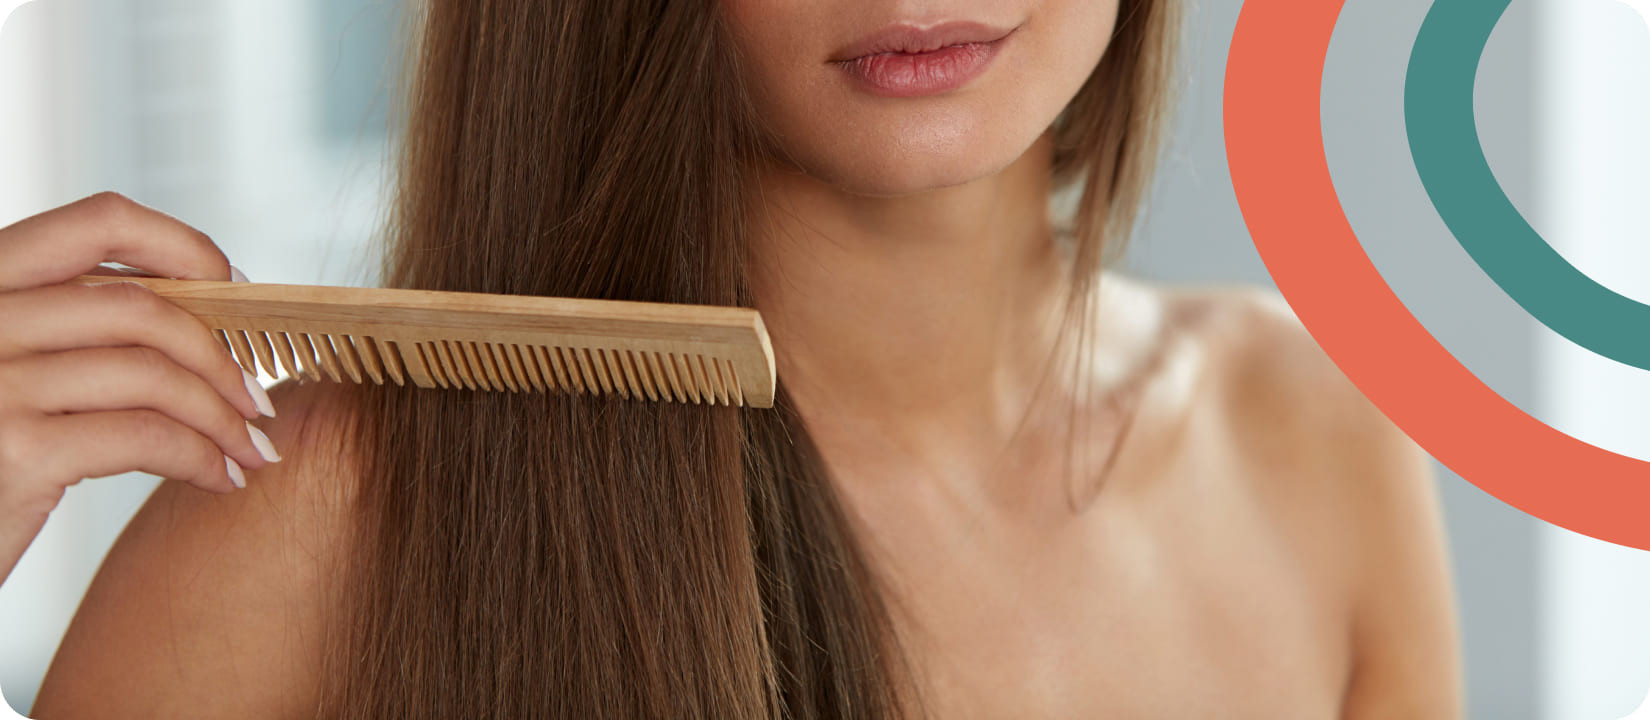 Лечение волос в домашних условиях: советы профессионалов - Клиника «Доктор Волос»